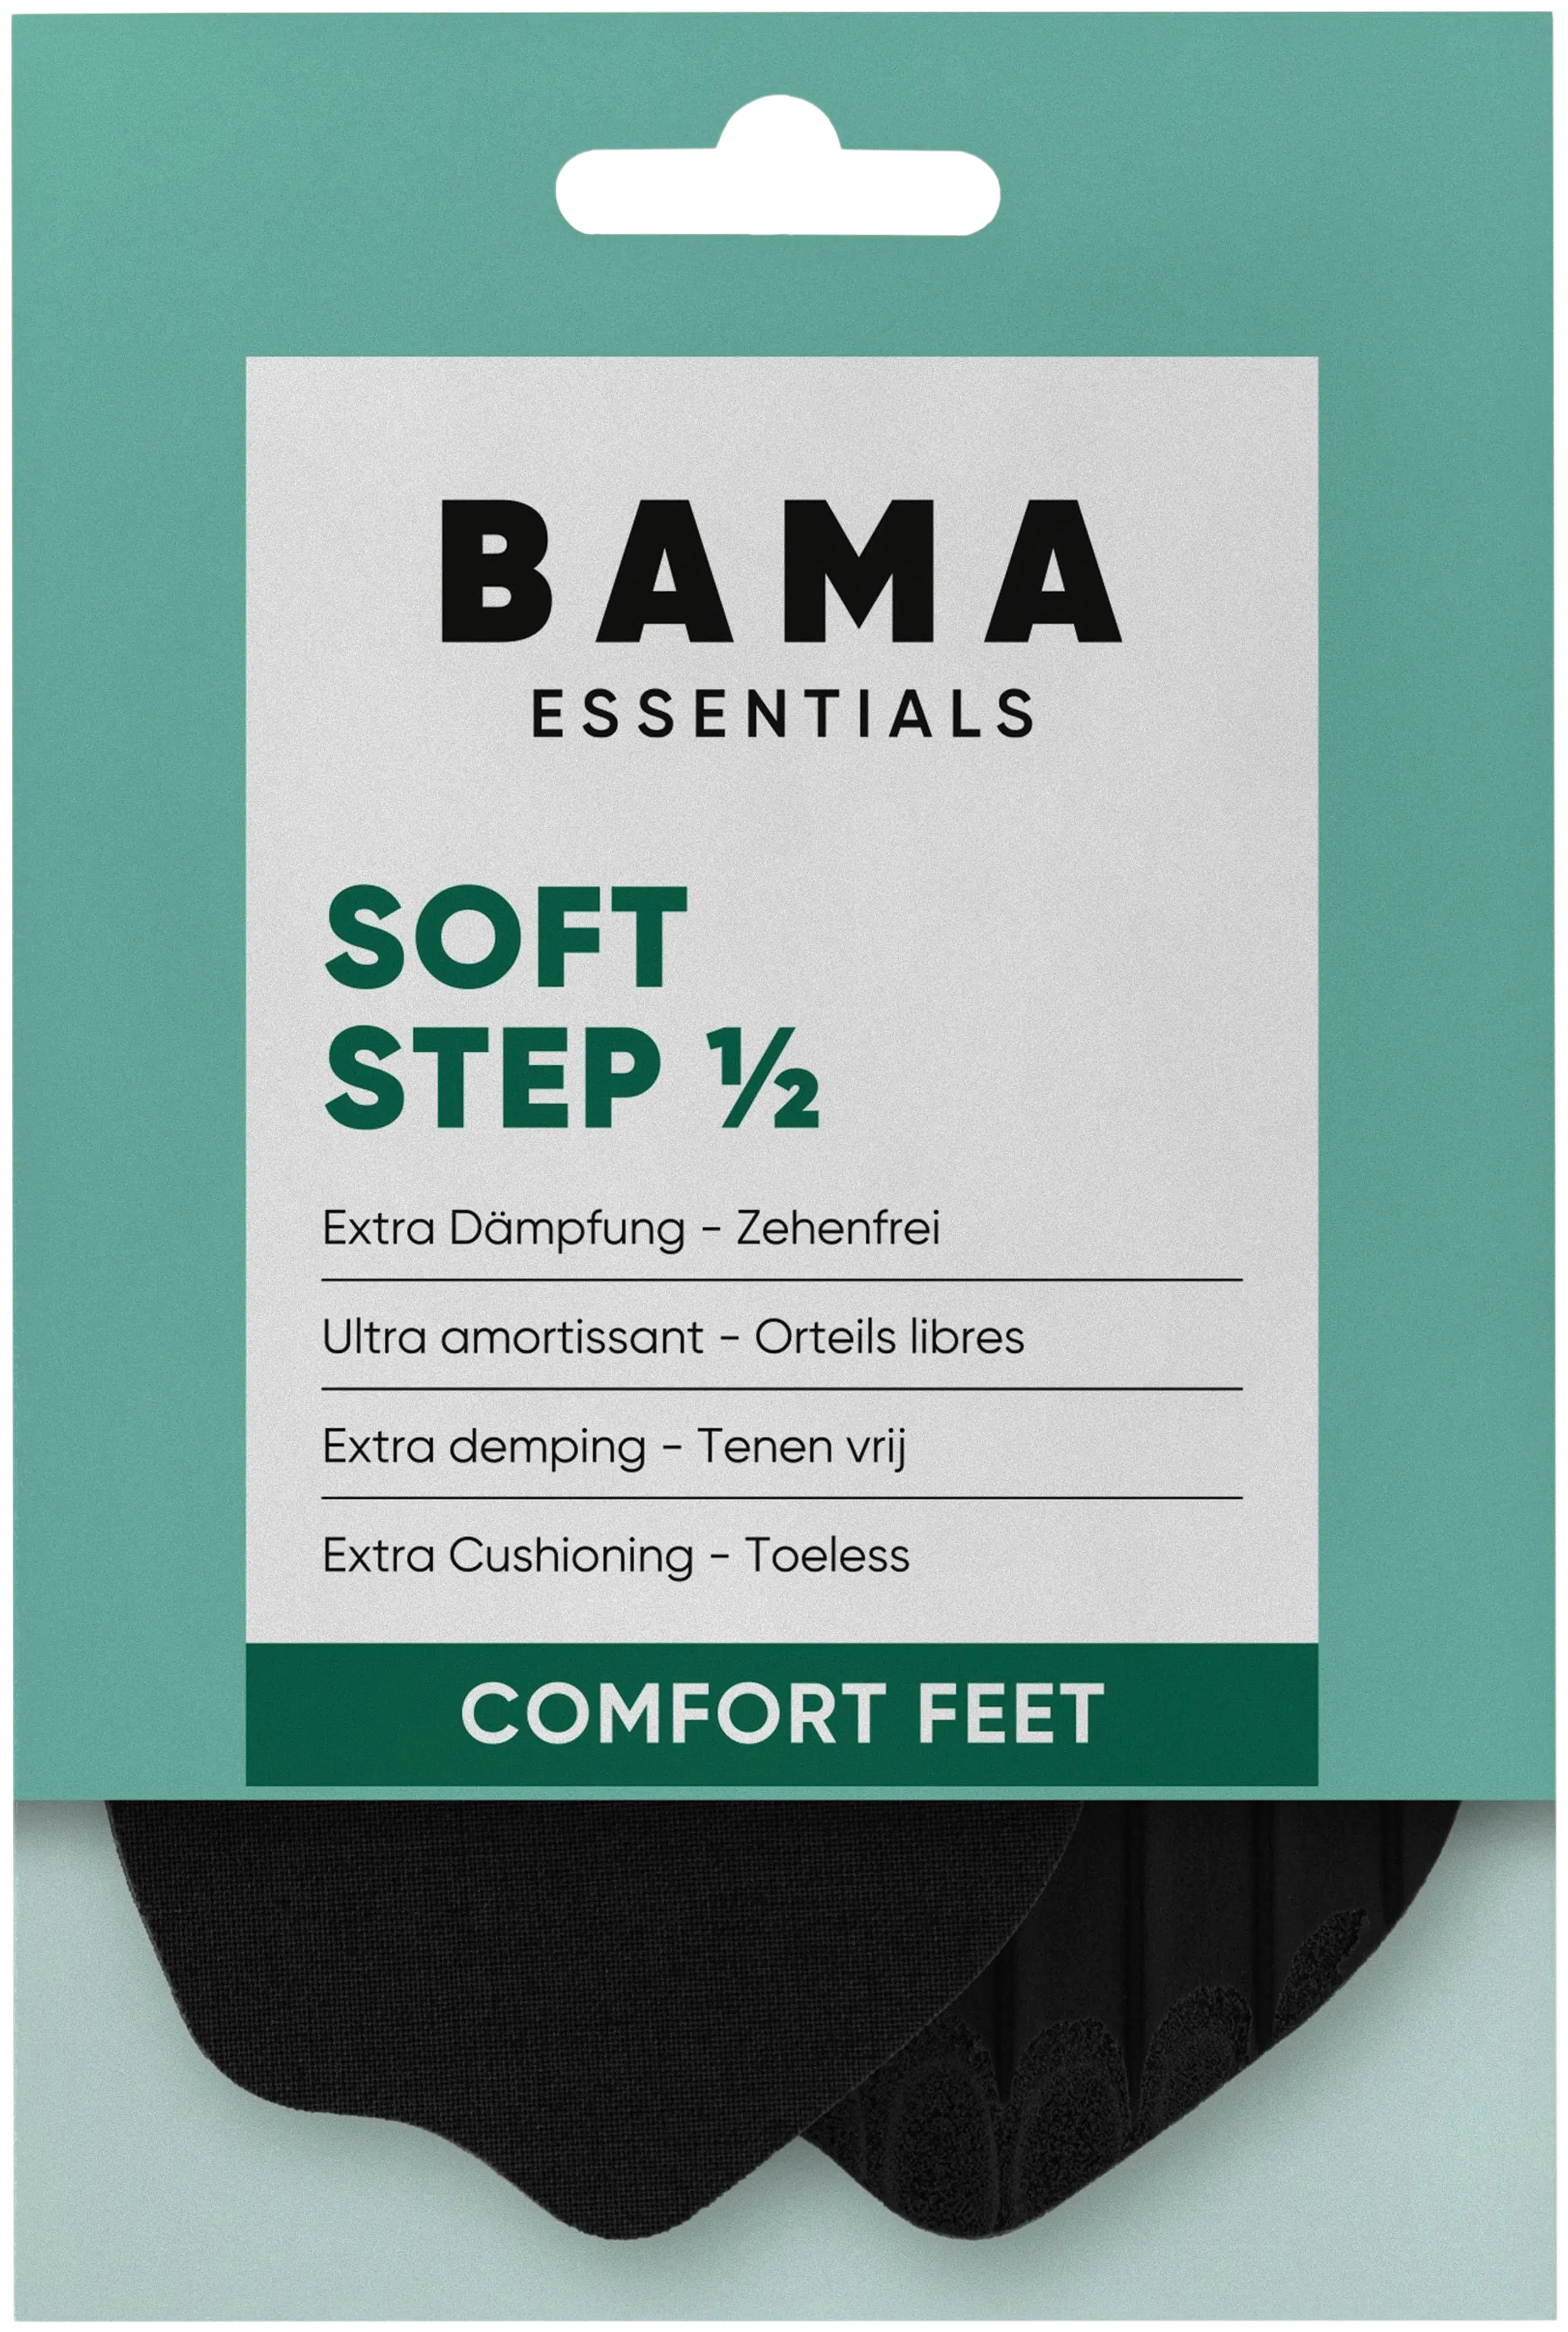 BAMA Soft Step Half 37/38